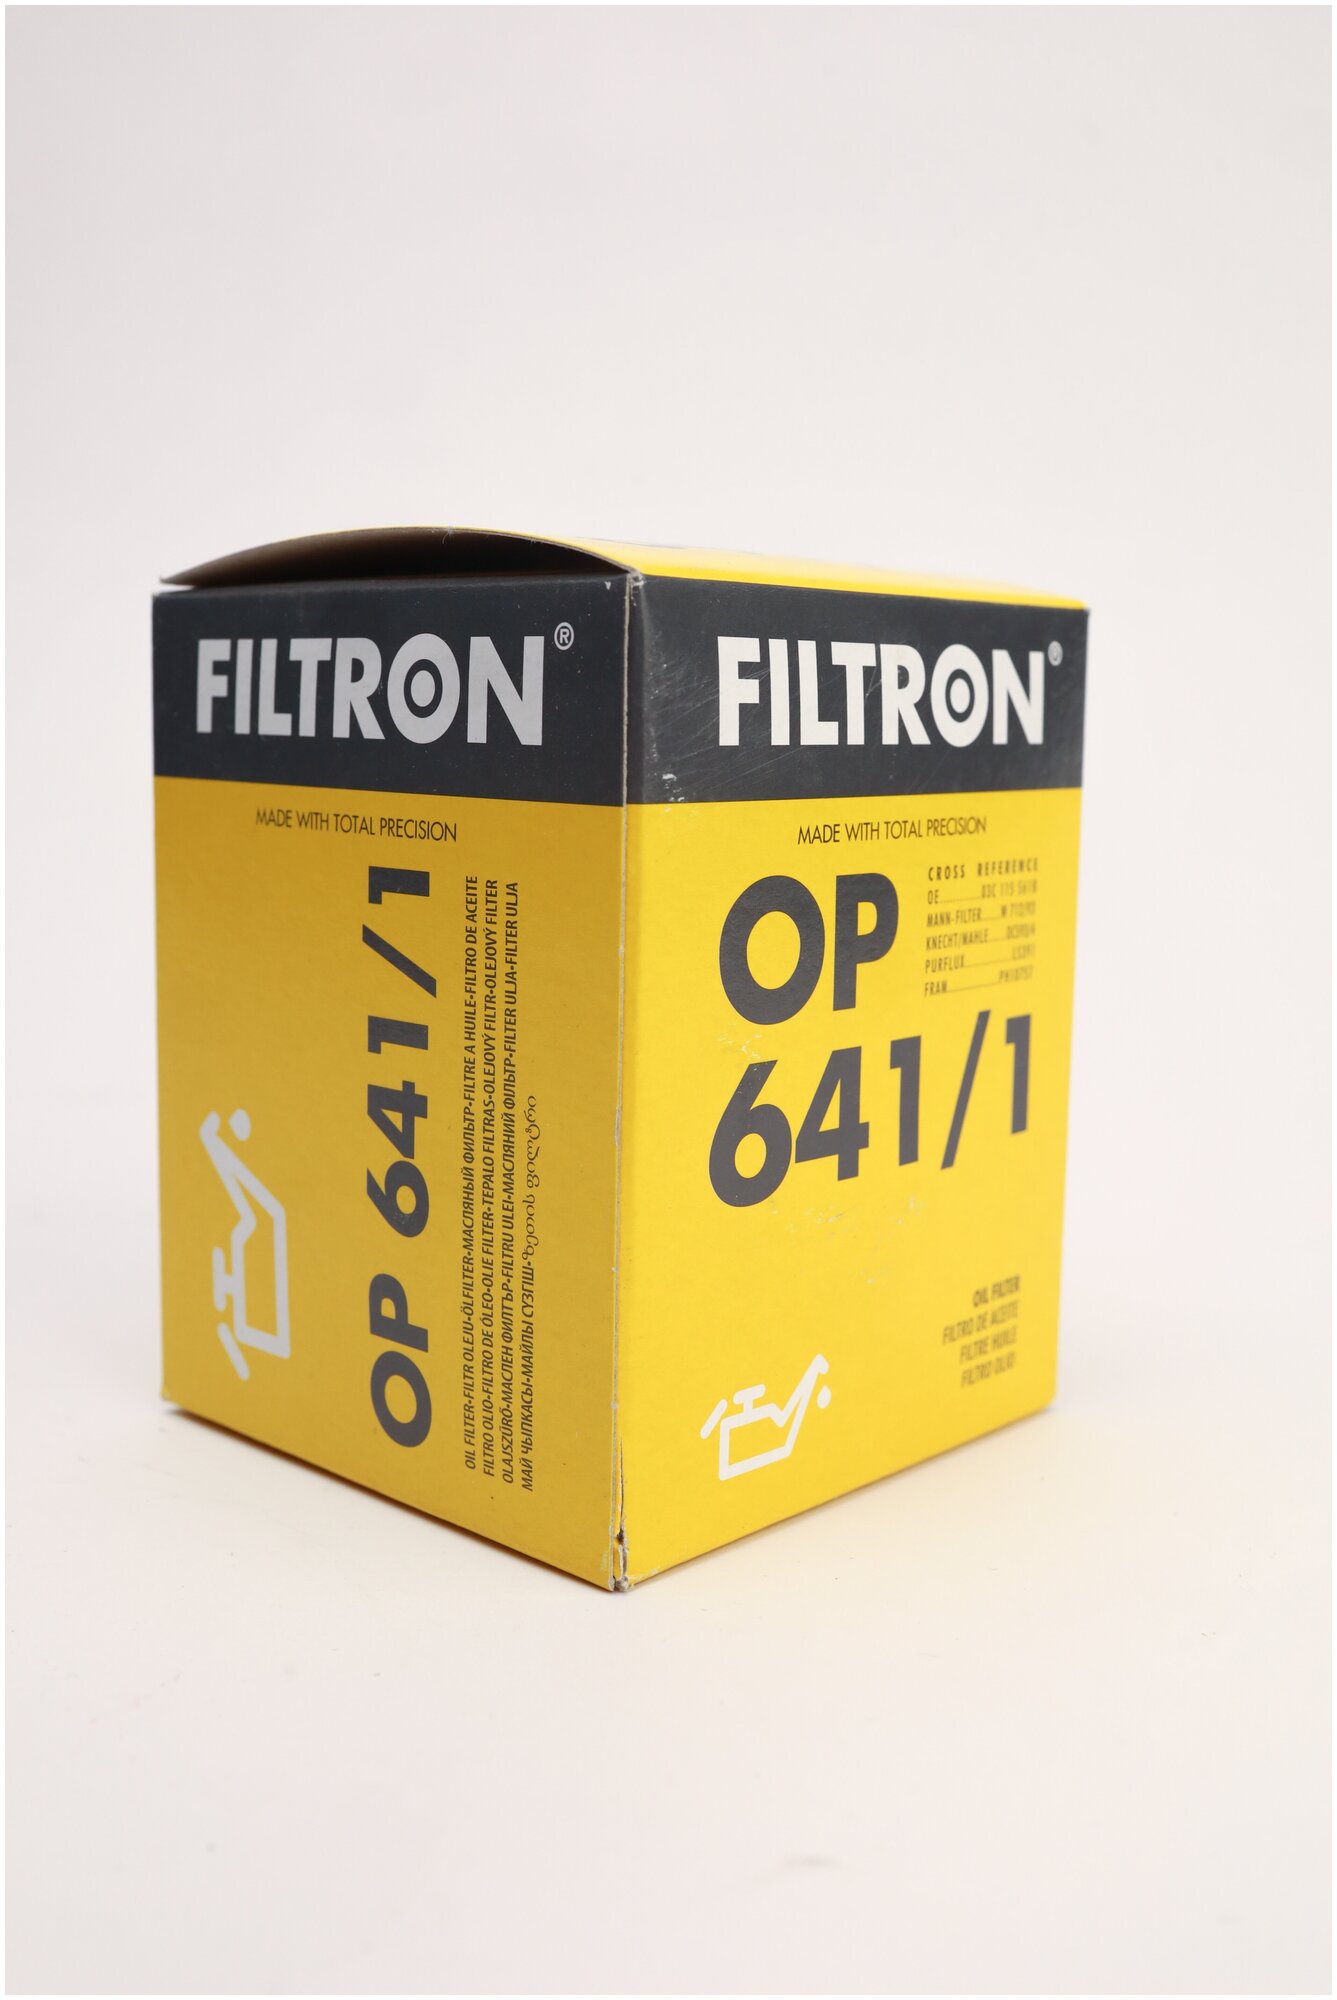 Масляный фильтр Filtron - фото №2